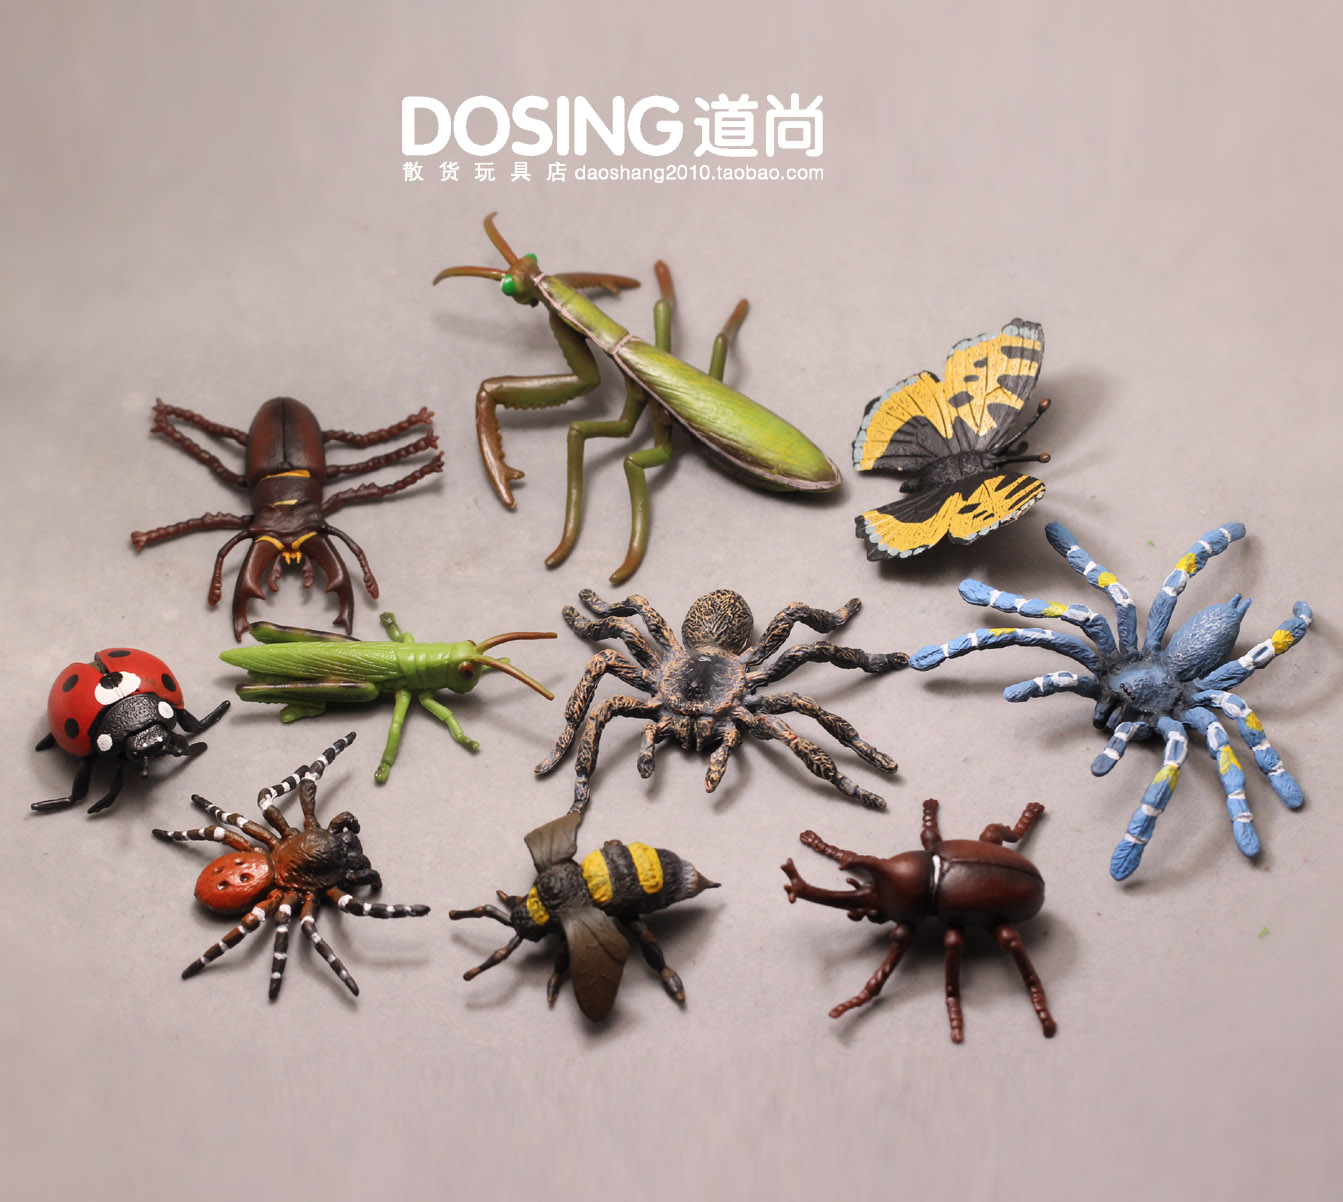 仿真动物模型 昆虫类 蜘蛛 螳螂 草蜢 蝴蝶甲虫 塑料玩具模型摆件